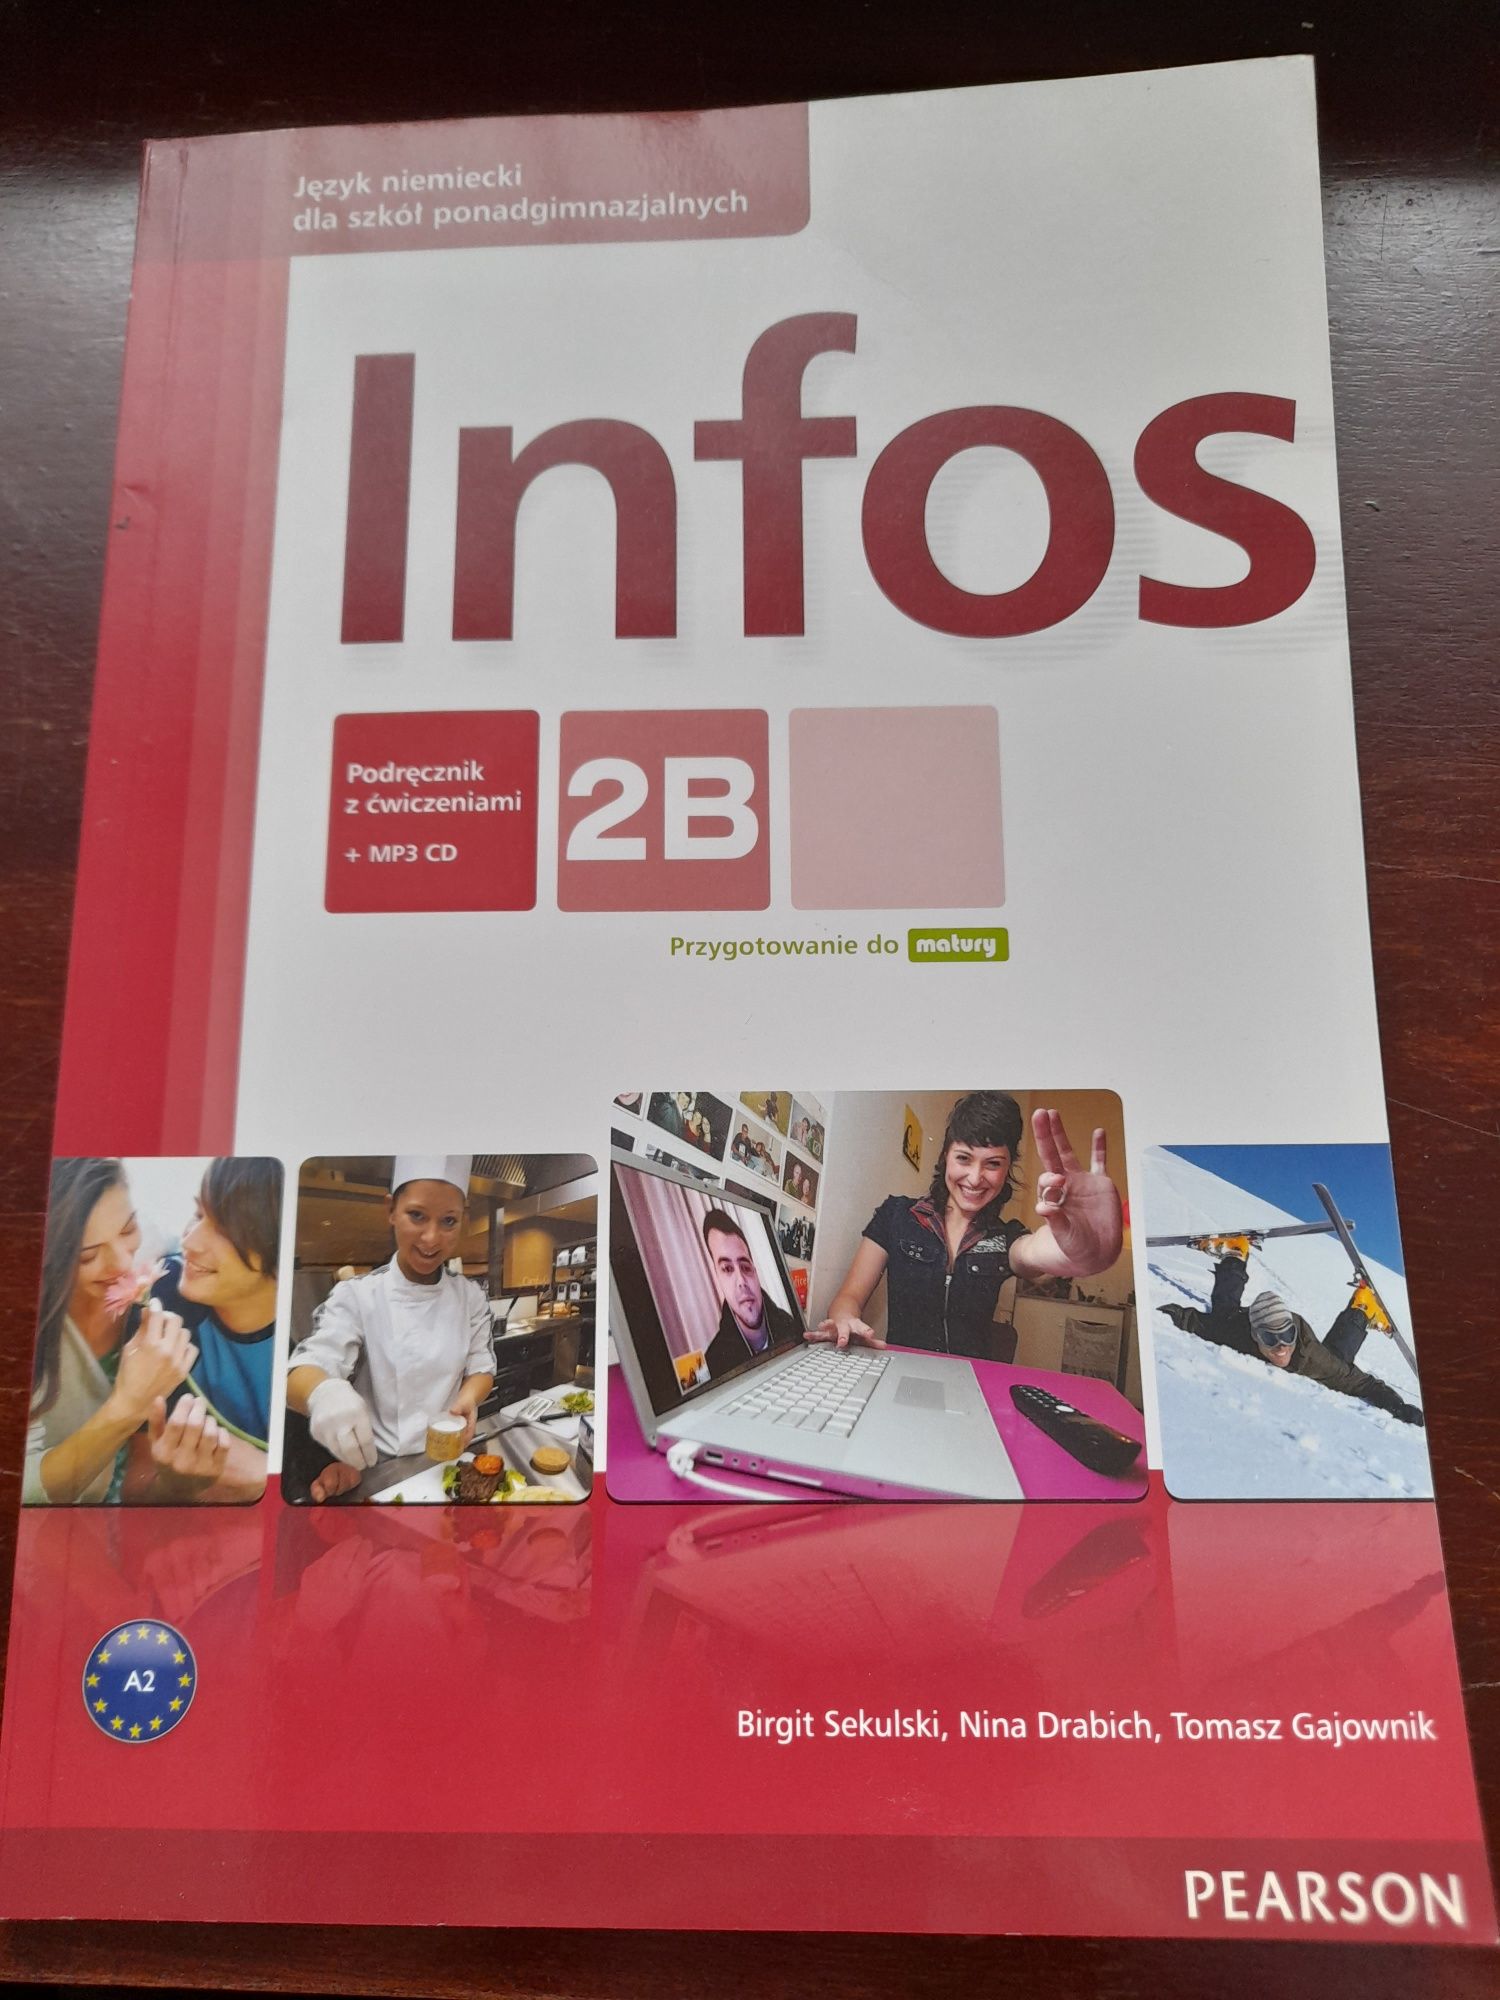 Infos 2B; Podręcznik z ćwiczeniami + MP3 CD; wyd. PEARSON